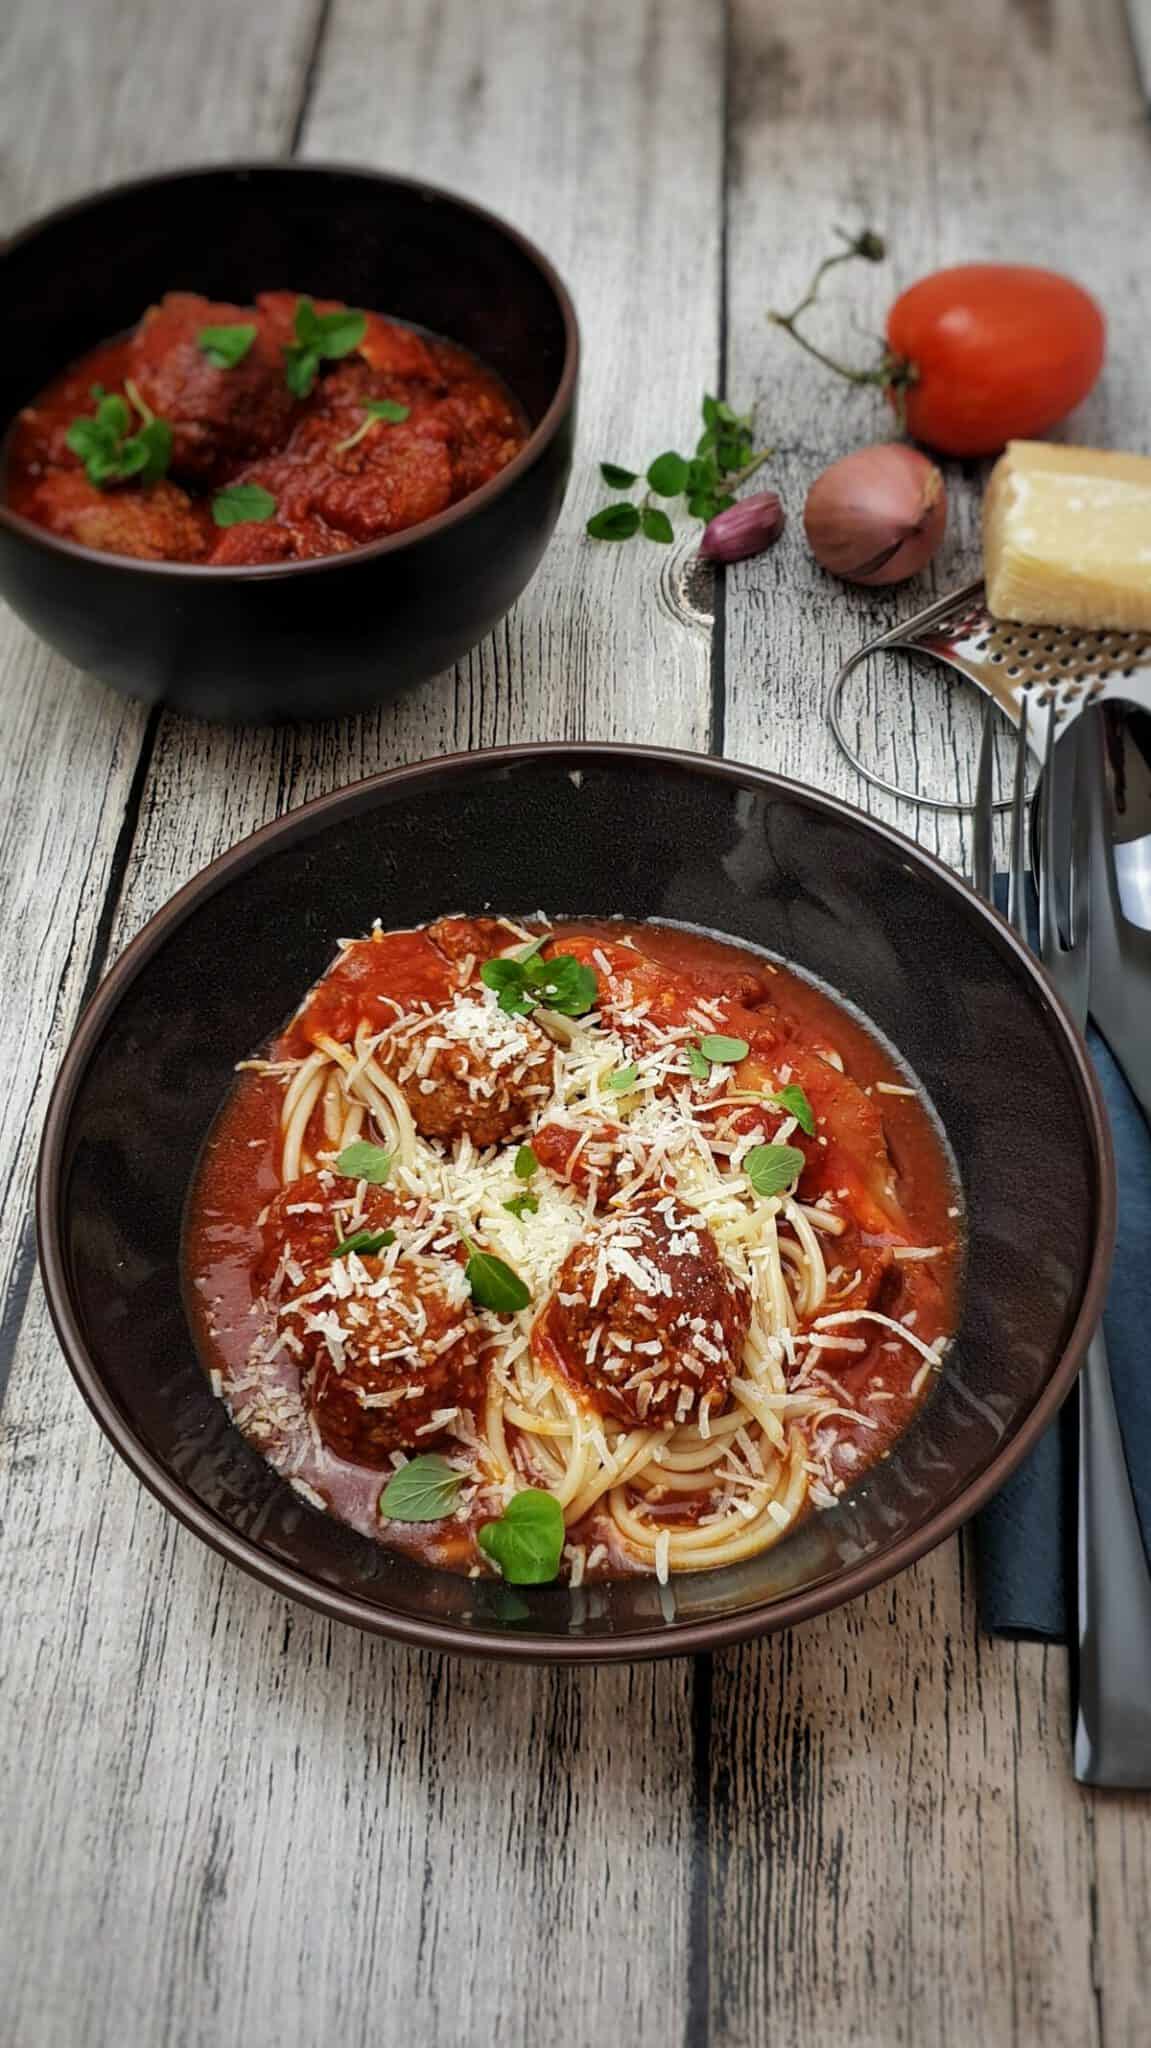 Hackfleischbällchen mit Tomatensoße, italienische Art - Lydiasfoodblog